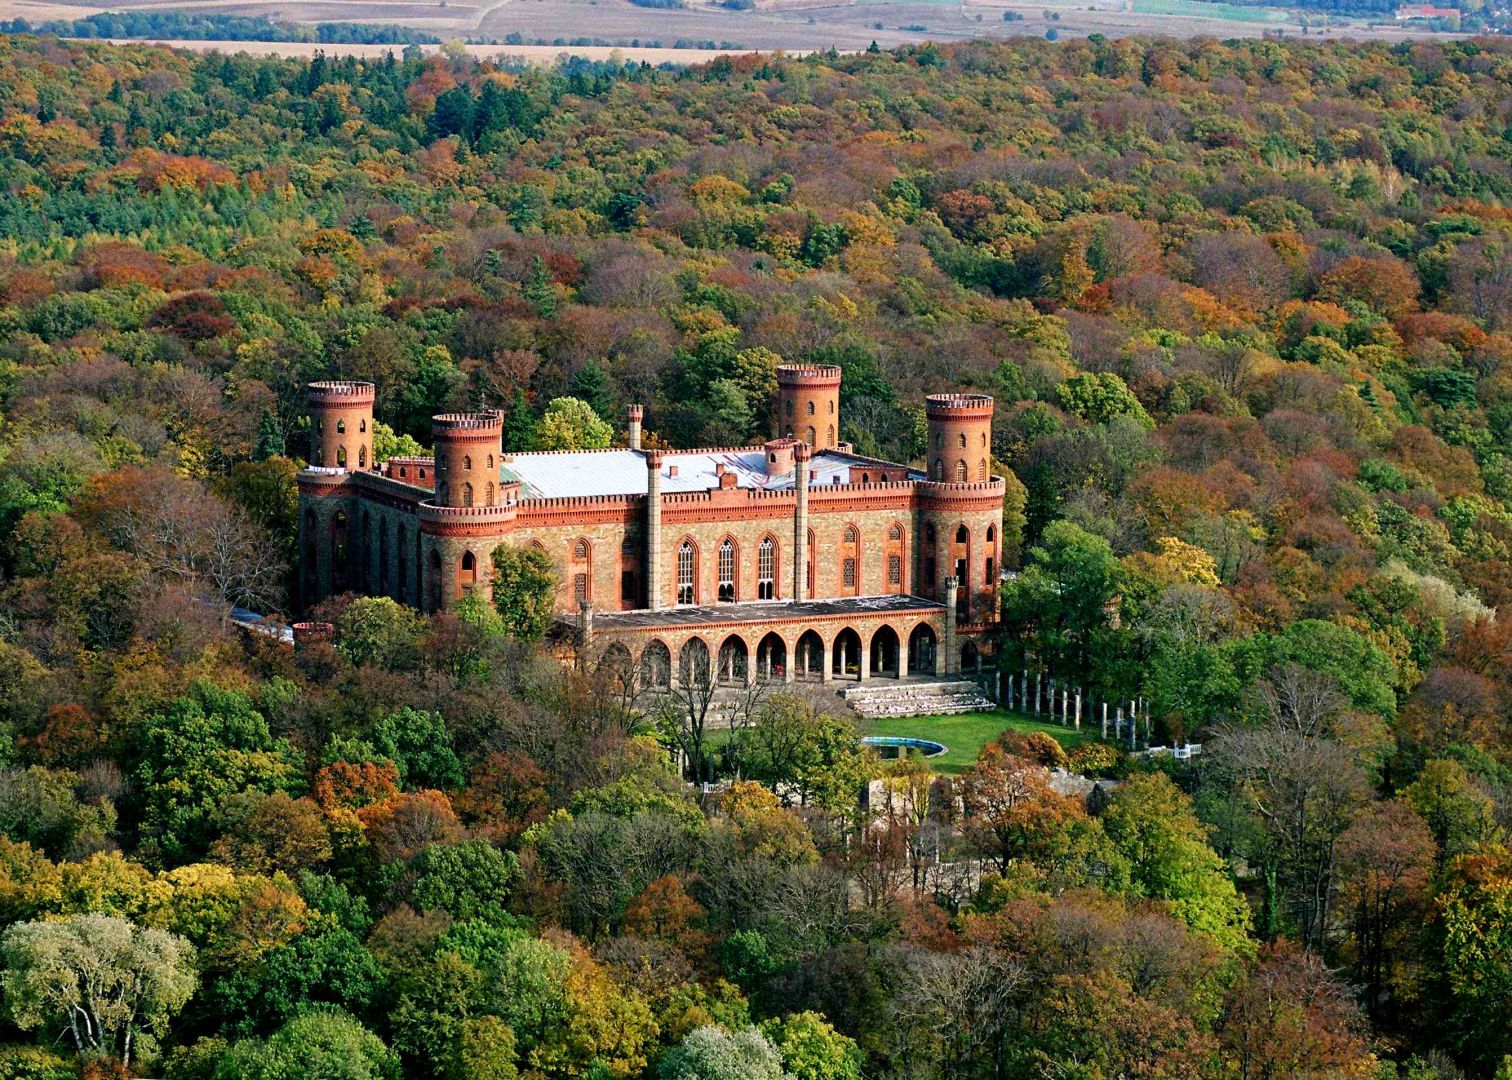 Hohenzollern Palace